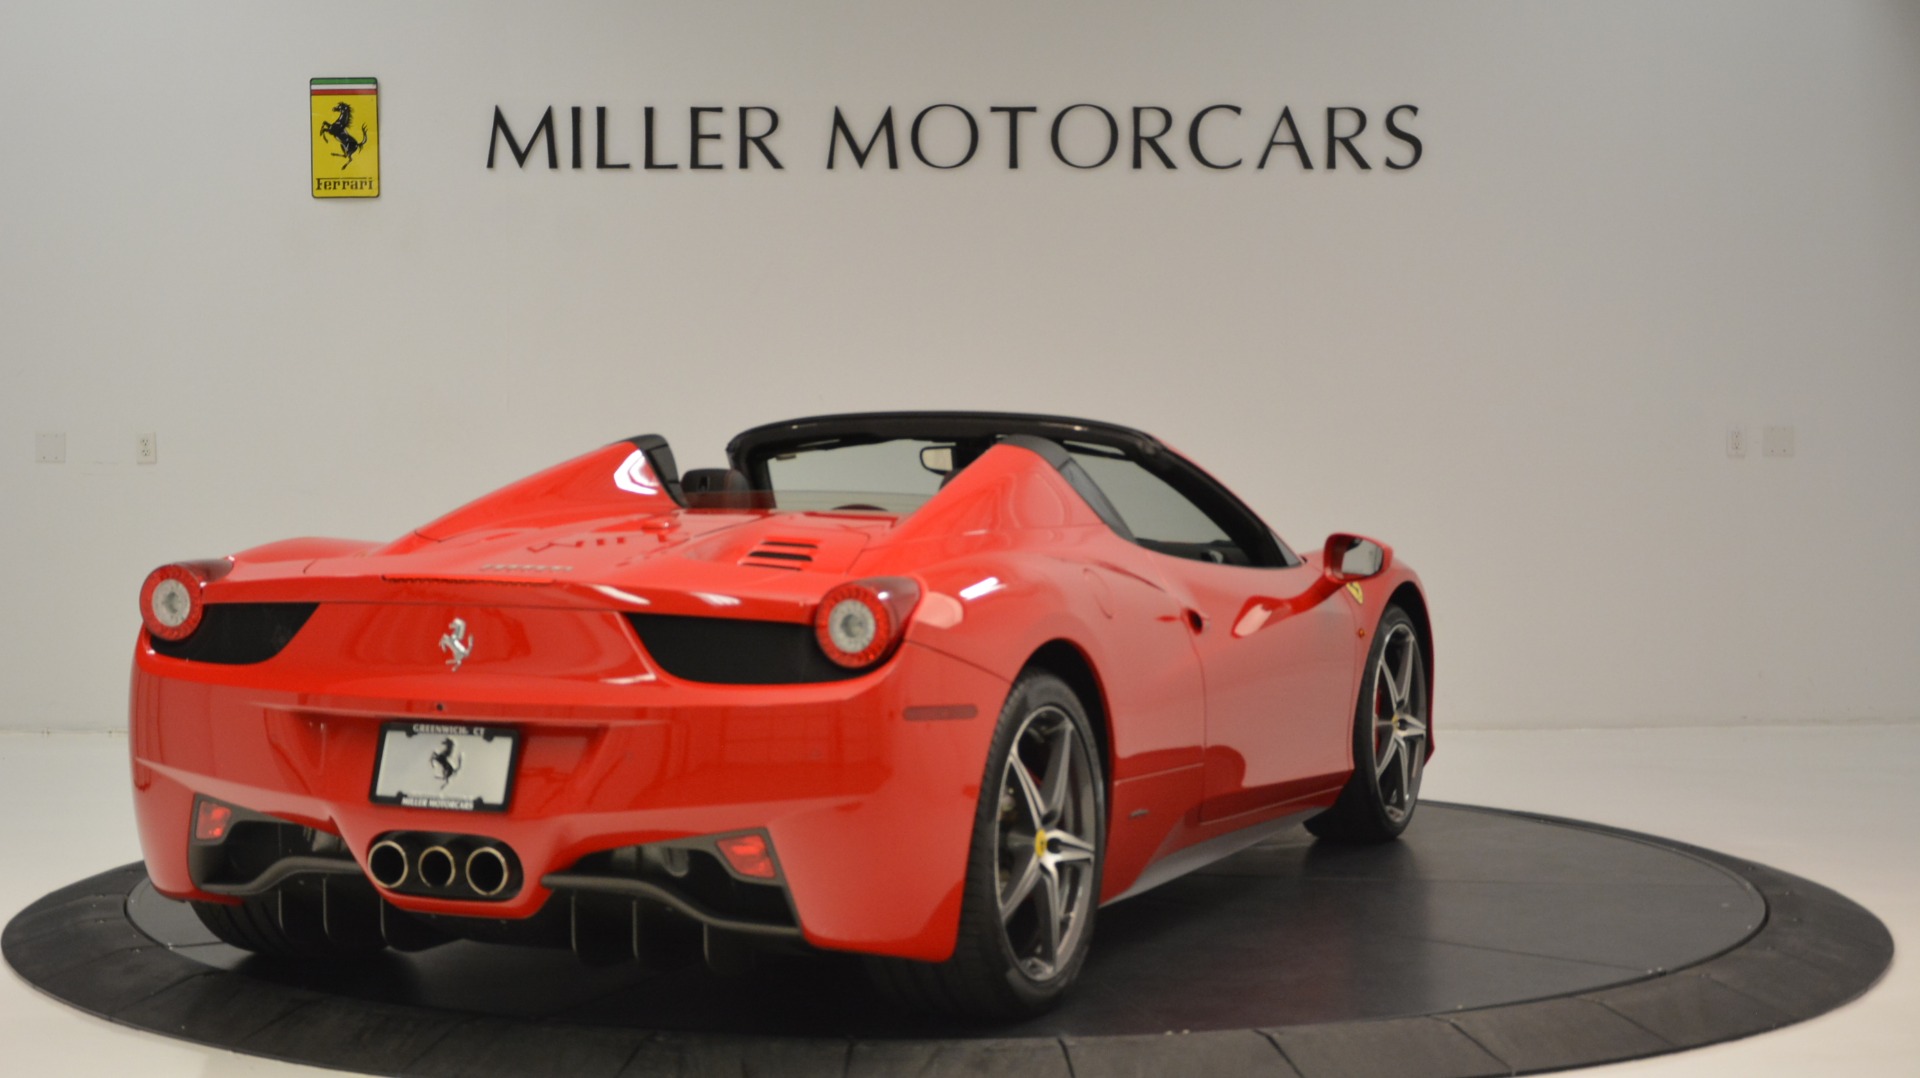 2015 Ferrari 458 Spider Stock 4483a For Sale Near